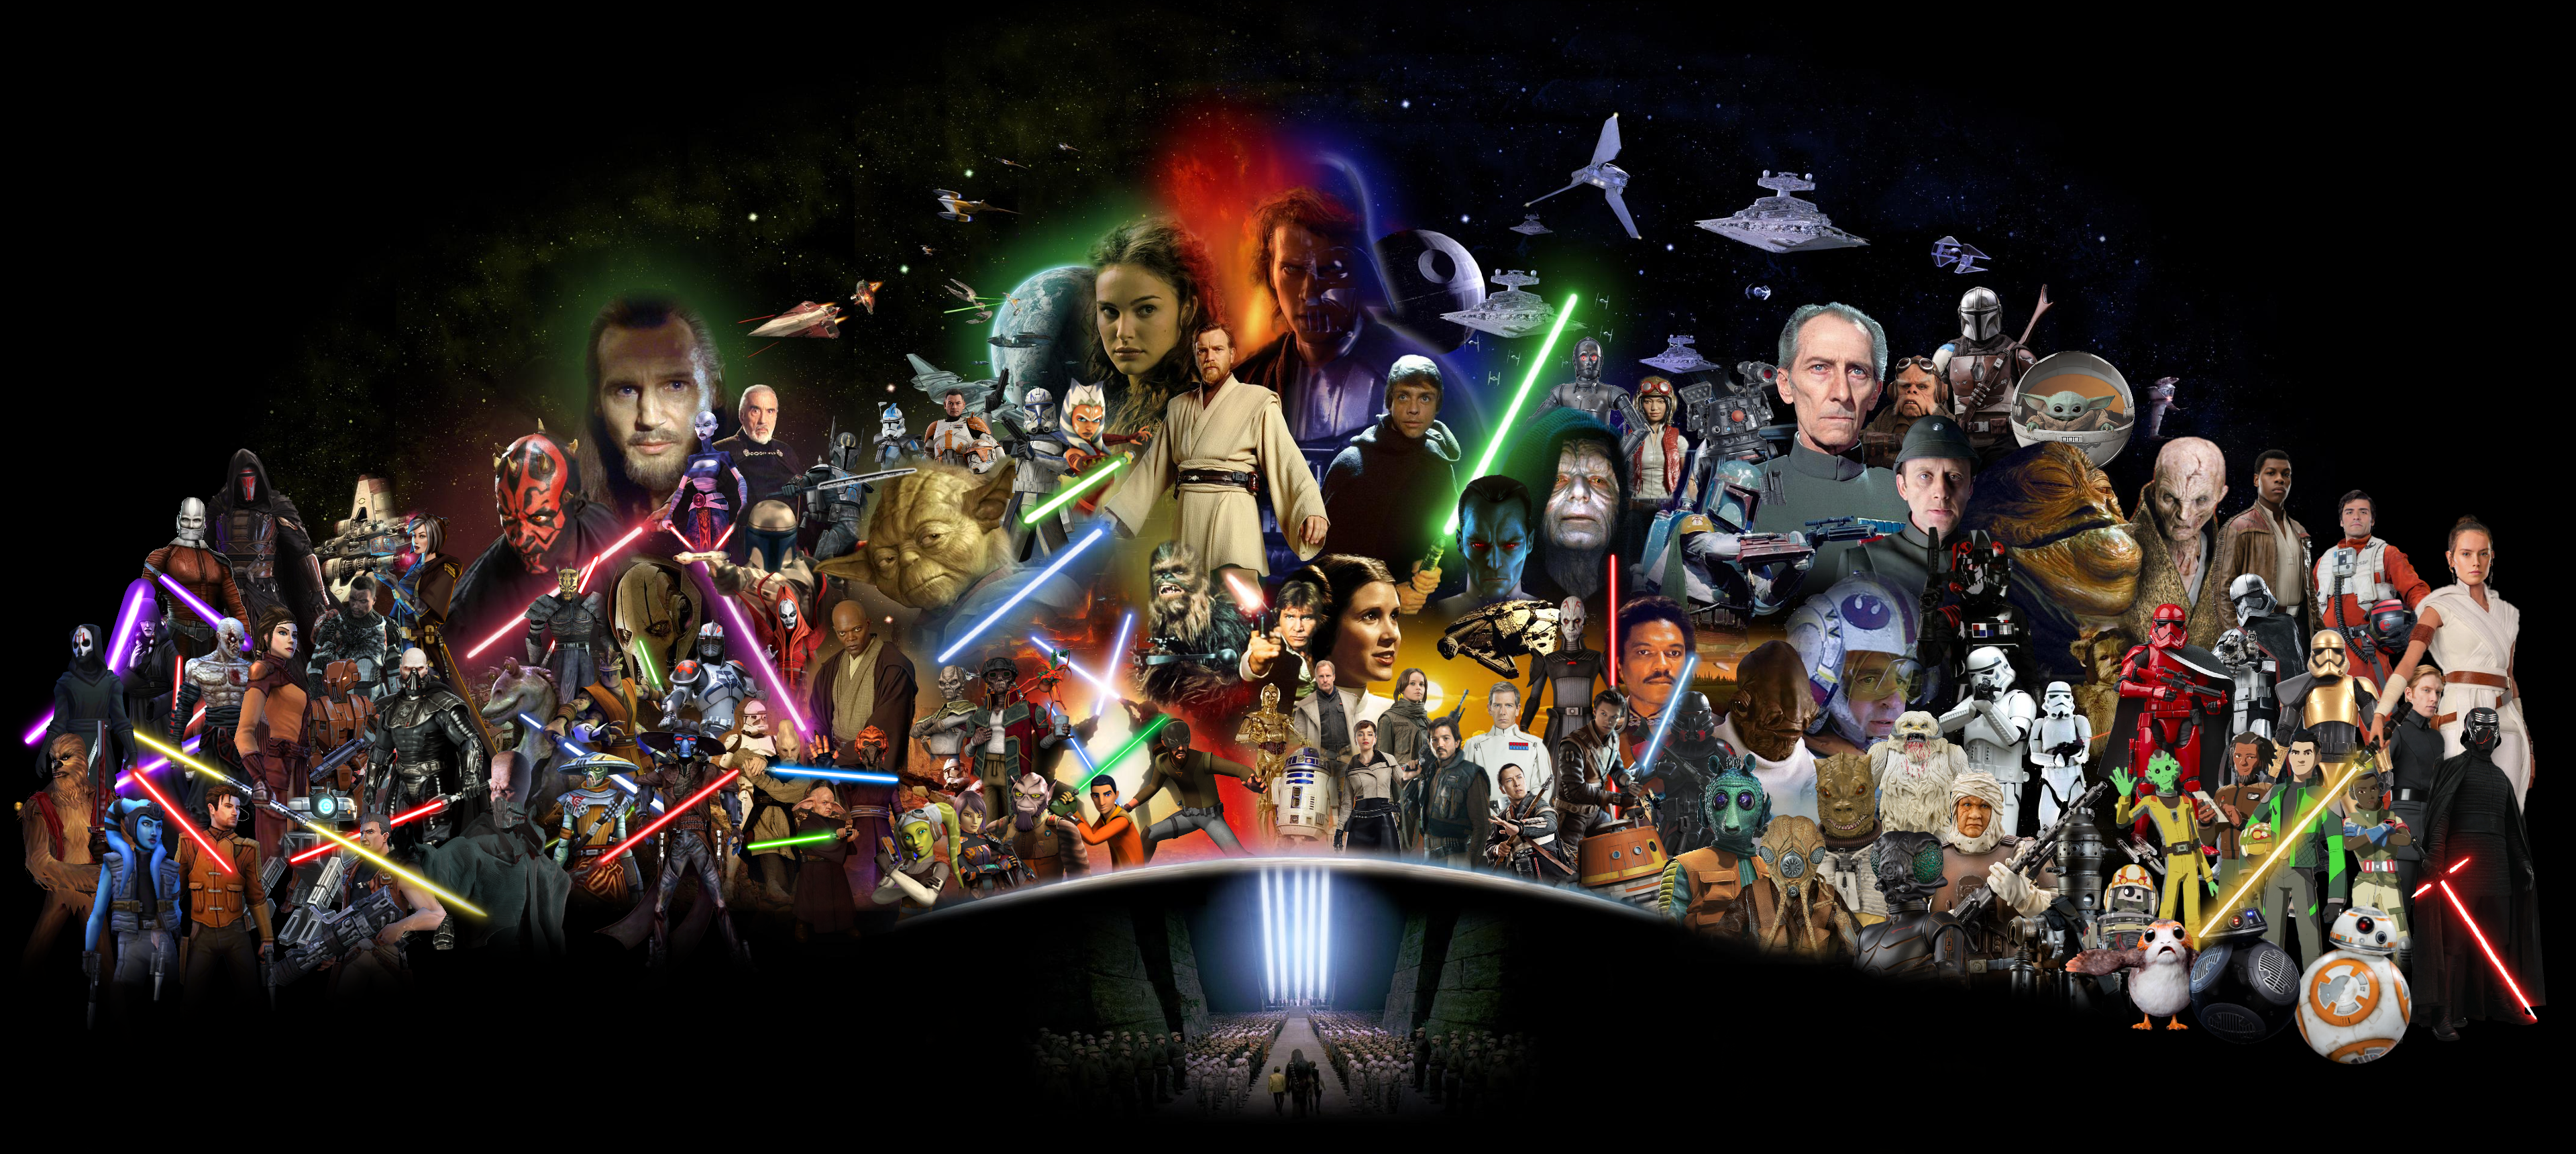 Ultimate Star Wars Saga Wallpaper